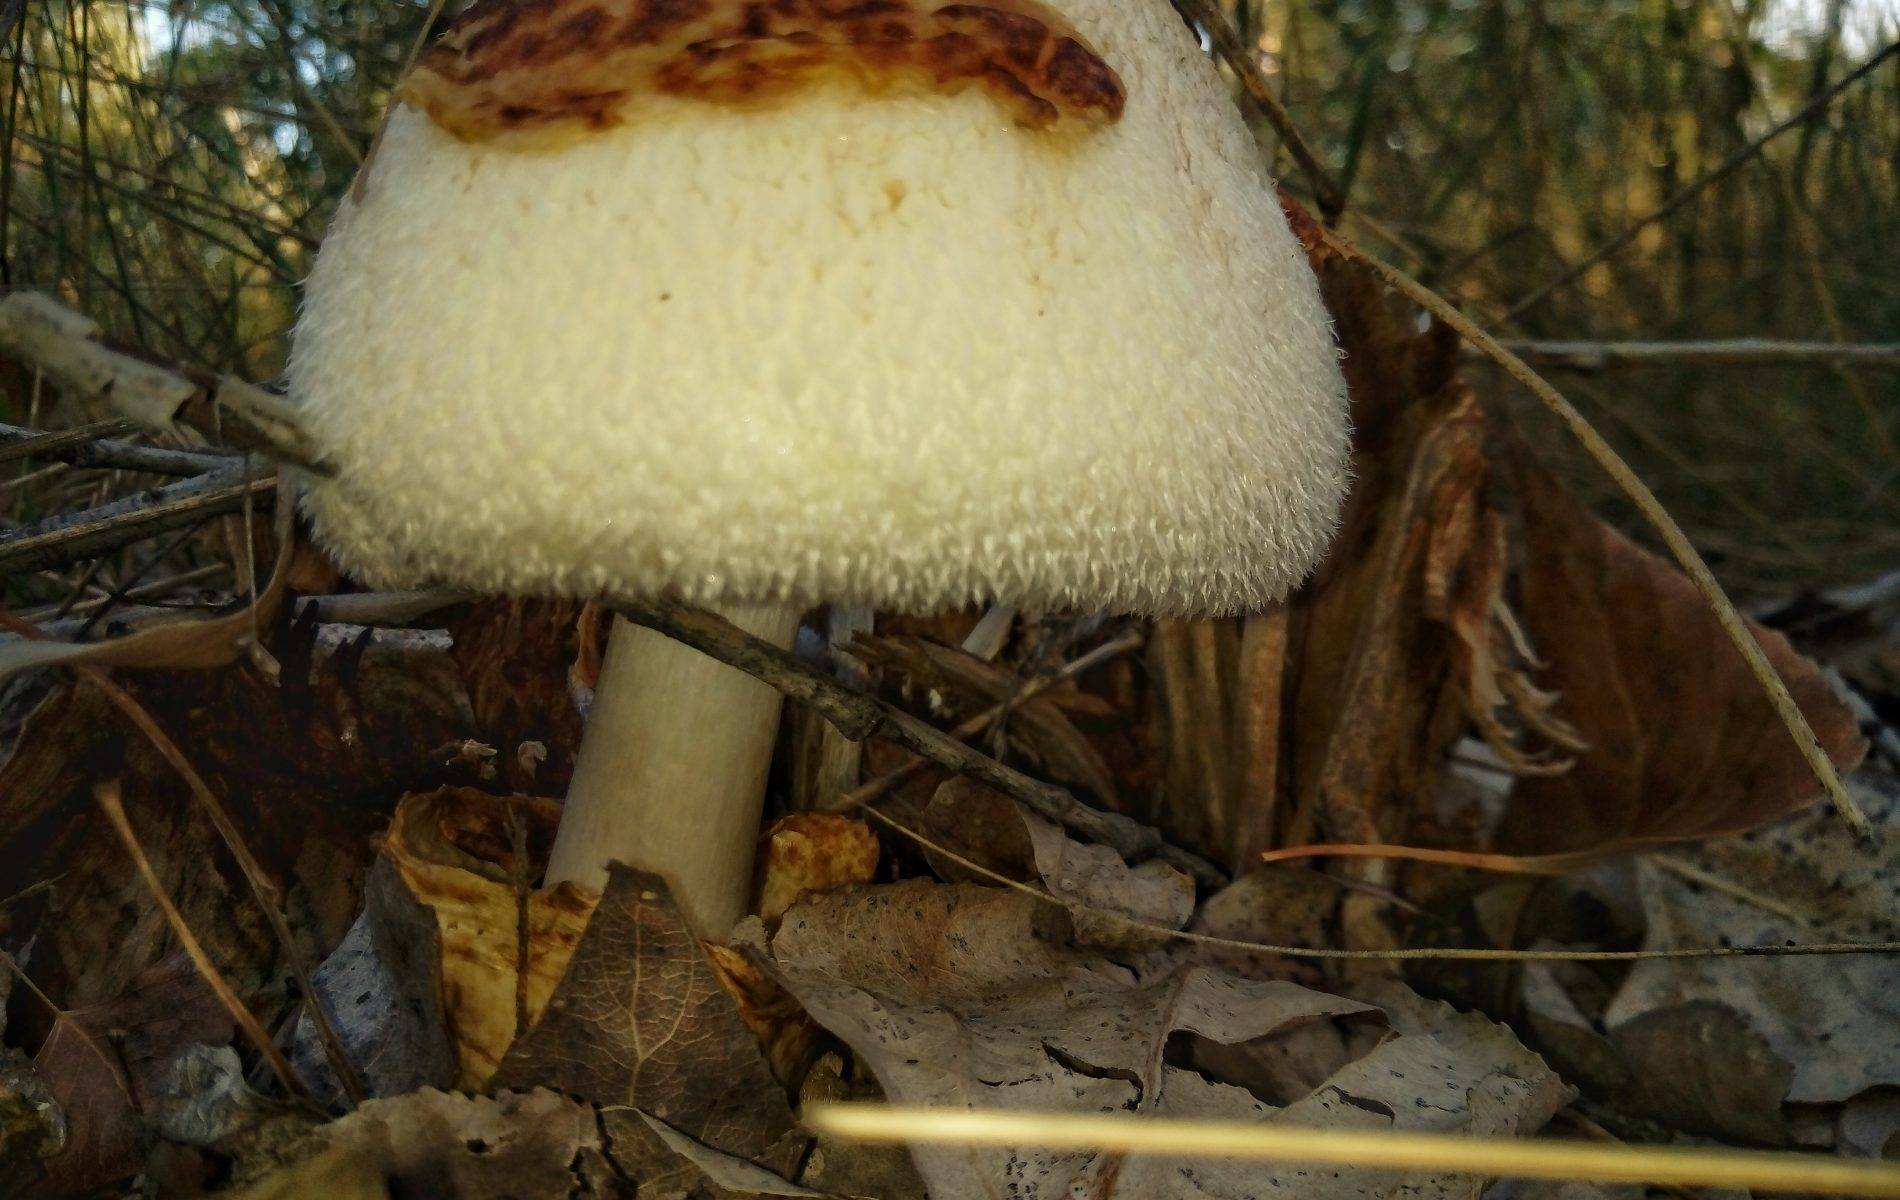 Вольвариелла шелковистая: съедобный ли гриб или нет, как собирать, фото